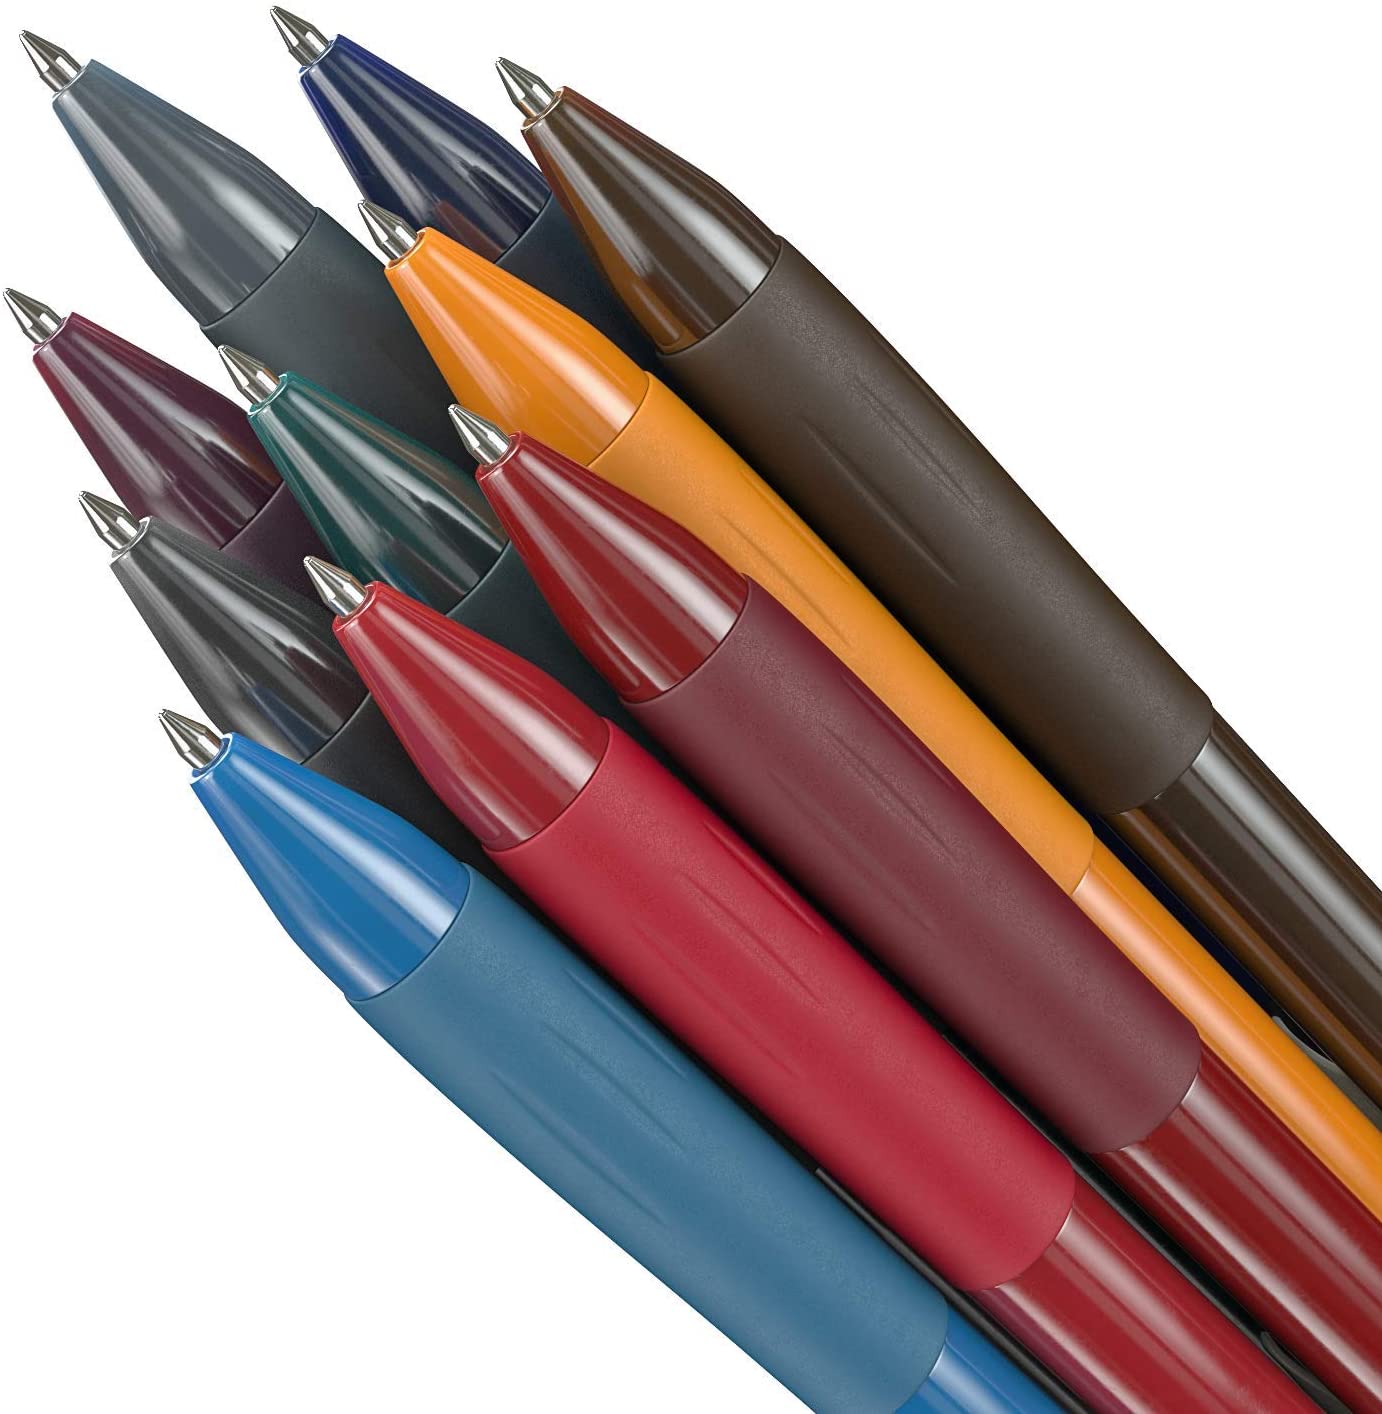 https://arteza.com/cdn/shop/products/retractable-gel-ink-pens-vintage-colors-set-of-10_-XWZXOxl.jpg?v=1666271821&width=1445